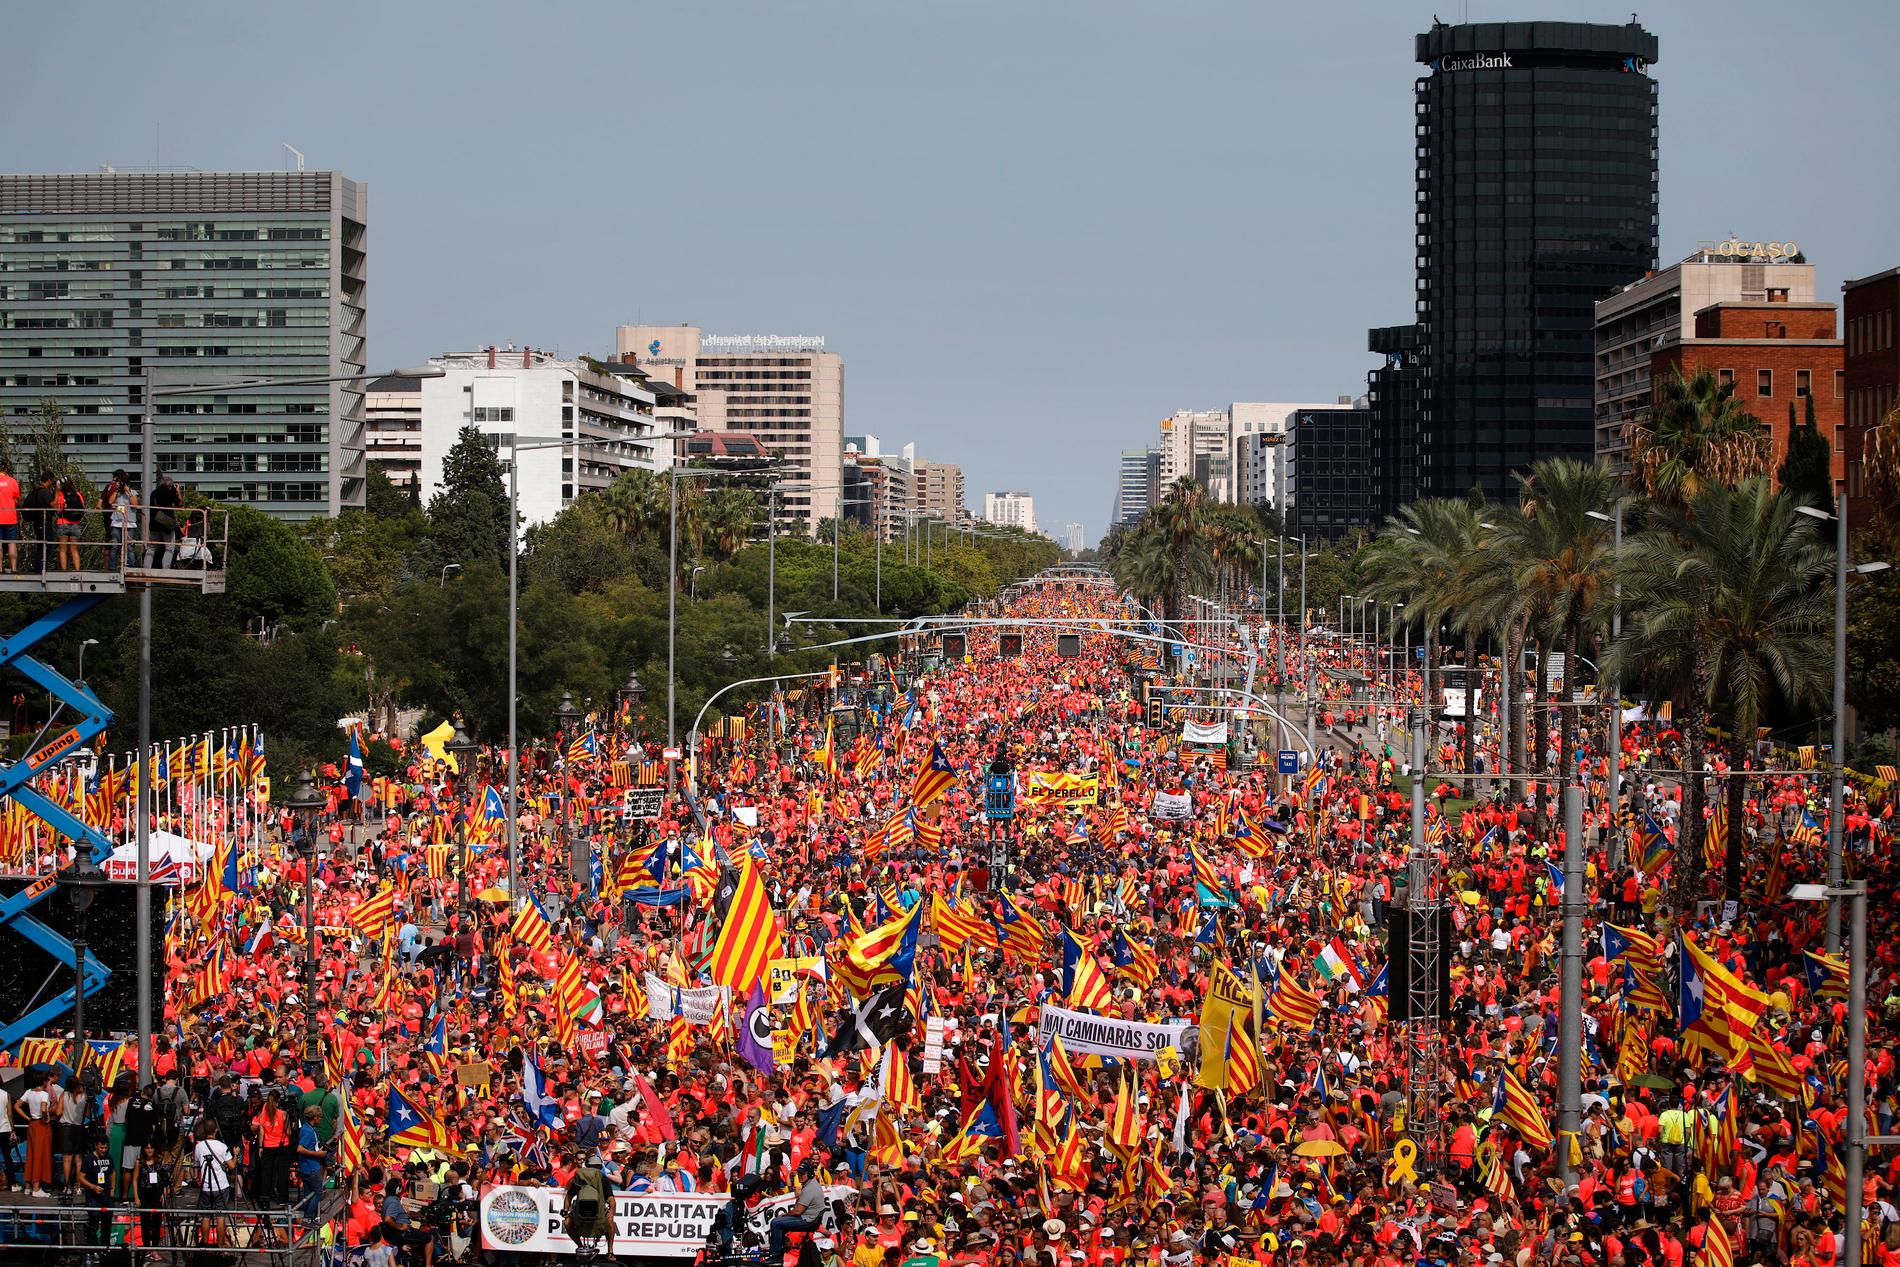 Människor viftar med katalanska flaggor under manifestationen "Diada för republiken" i Barcelona.